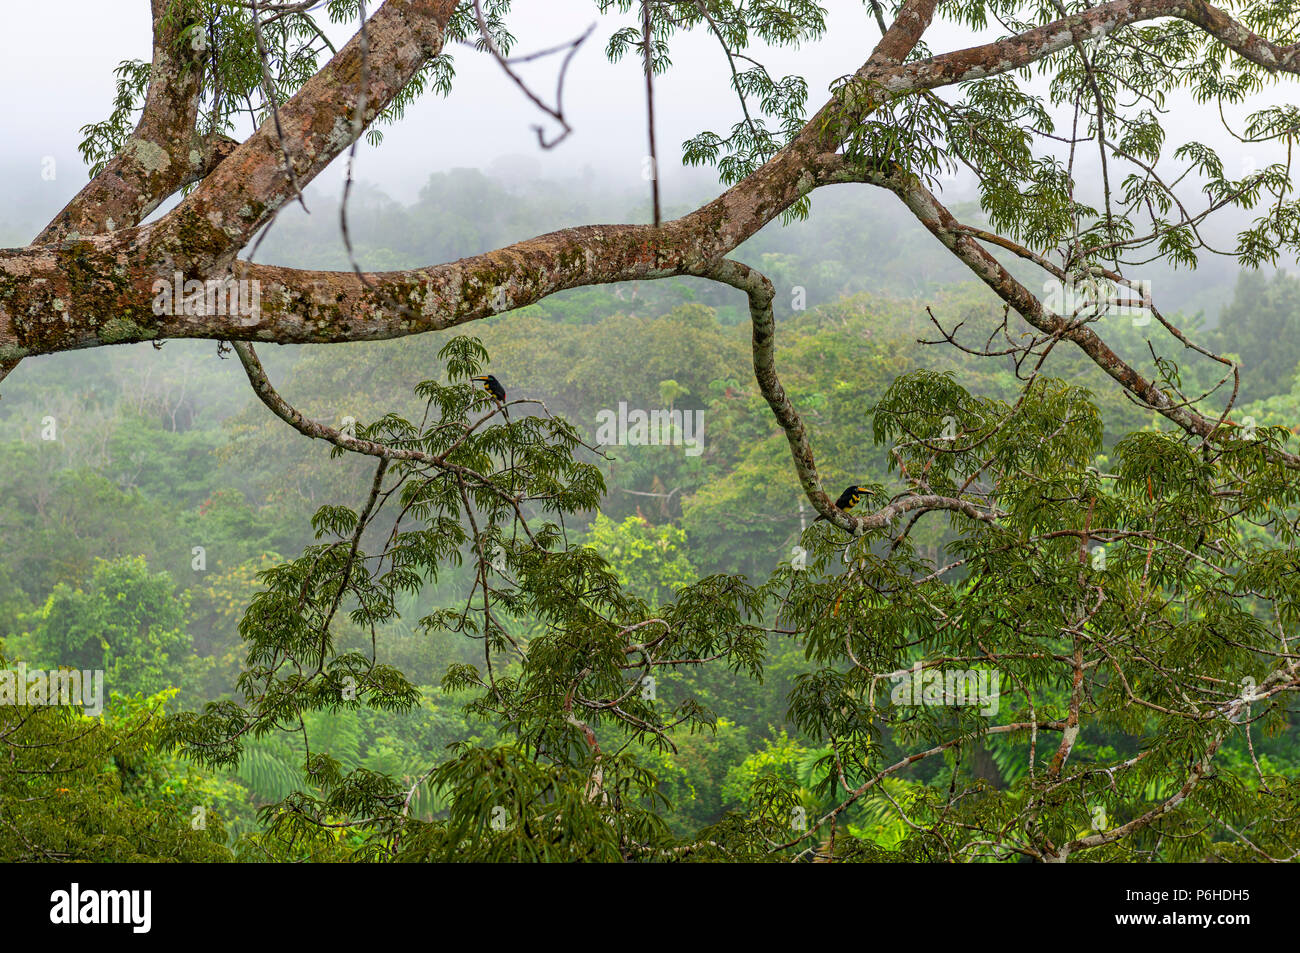 La foresta pluviale amazzonica nella nebbia visto da una piattaforma di osservazione in una Ceiba tree con due molti-nastrare Aracari (Pteroglossus pluricinctus), Yasuni NP. Foto Stock